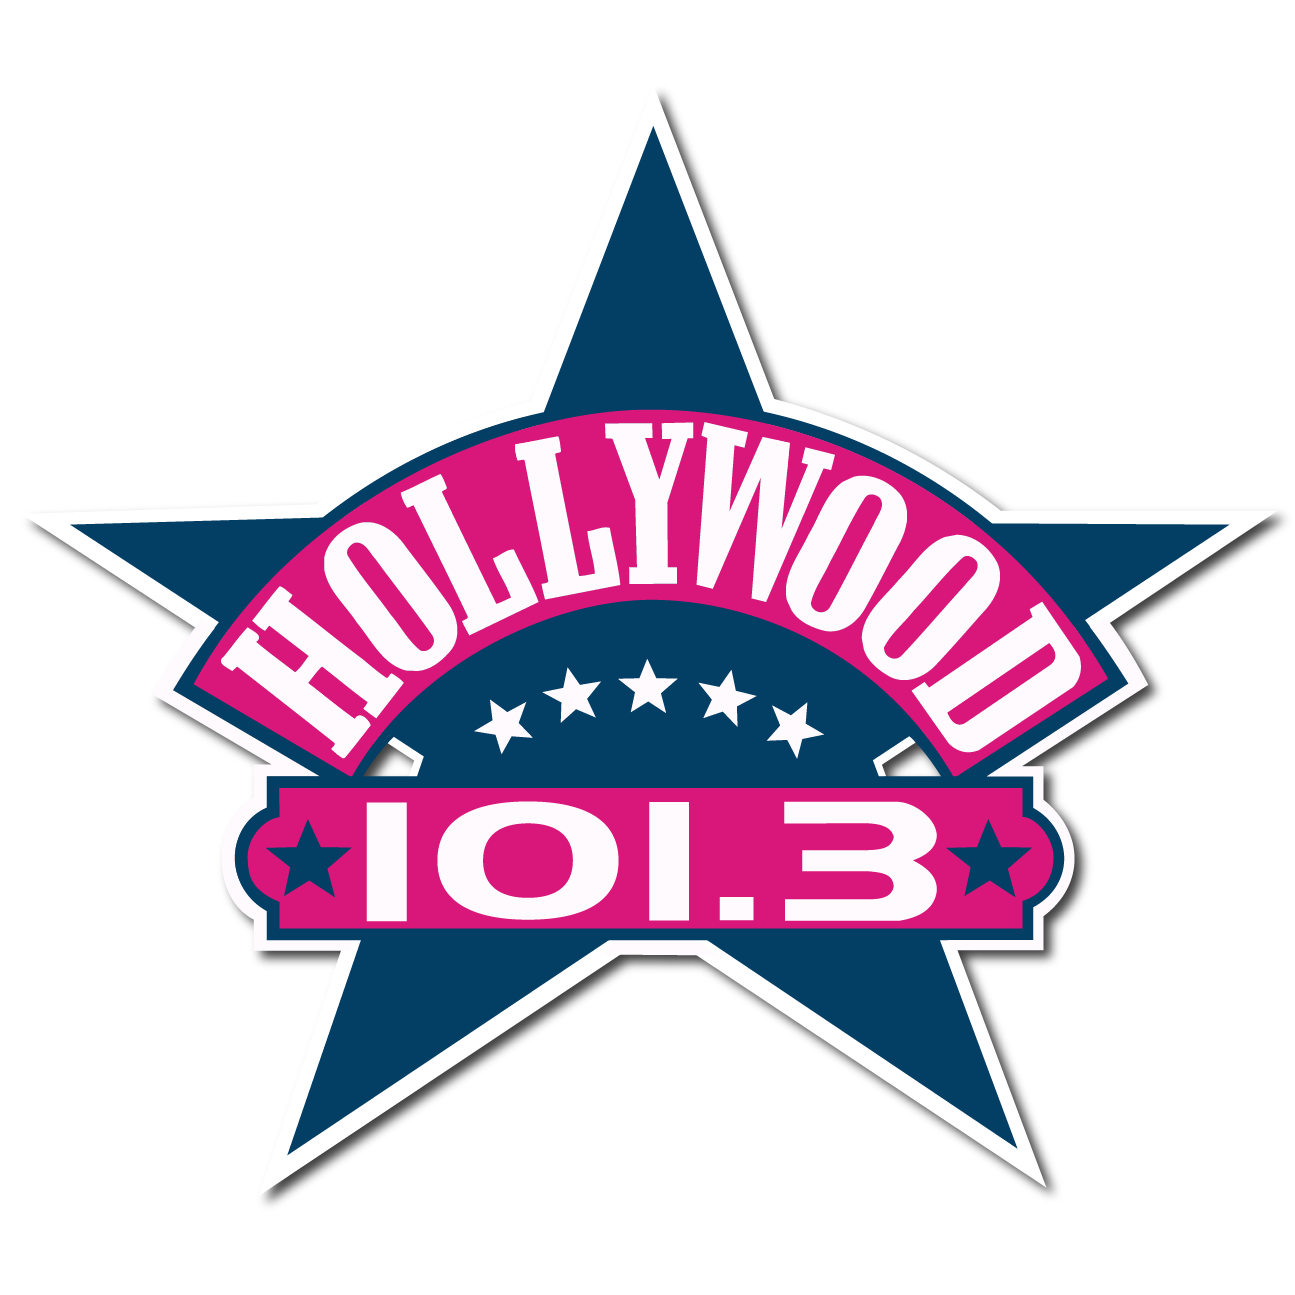 diario fluctuar Ineficiente Radio Hollywood (Cristal Classic) - 101.3 FM Rosario Argentina - listen live